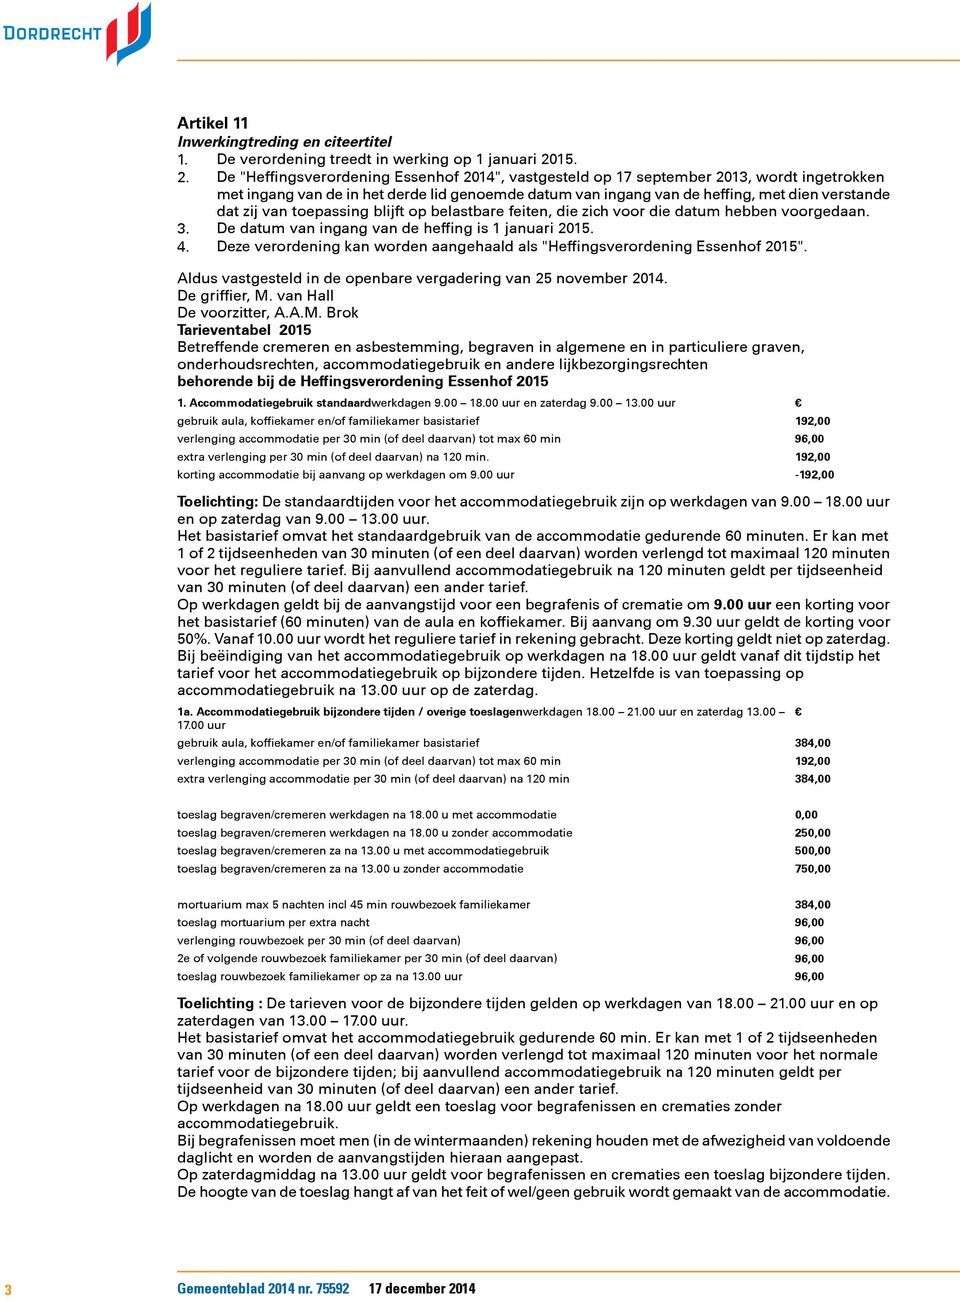 De "Heffingsverordening Essenhof 2014", vastgesteld op 17 september 2013, wordt ingetrokken met ingang van de in het derde lid genoemde datum van ingang van de heffing, met dien verstande dat zij van